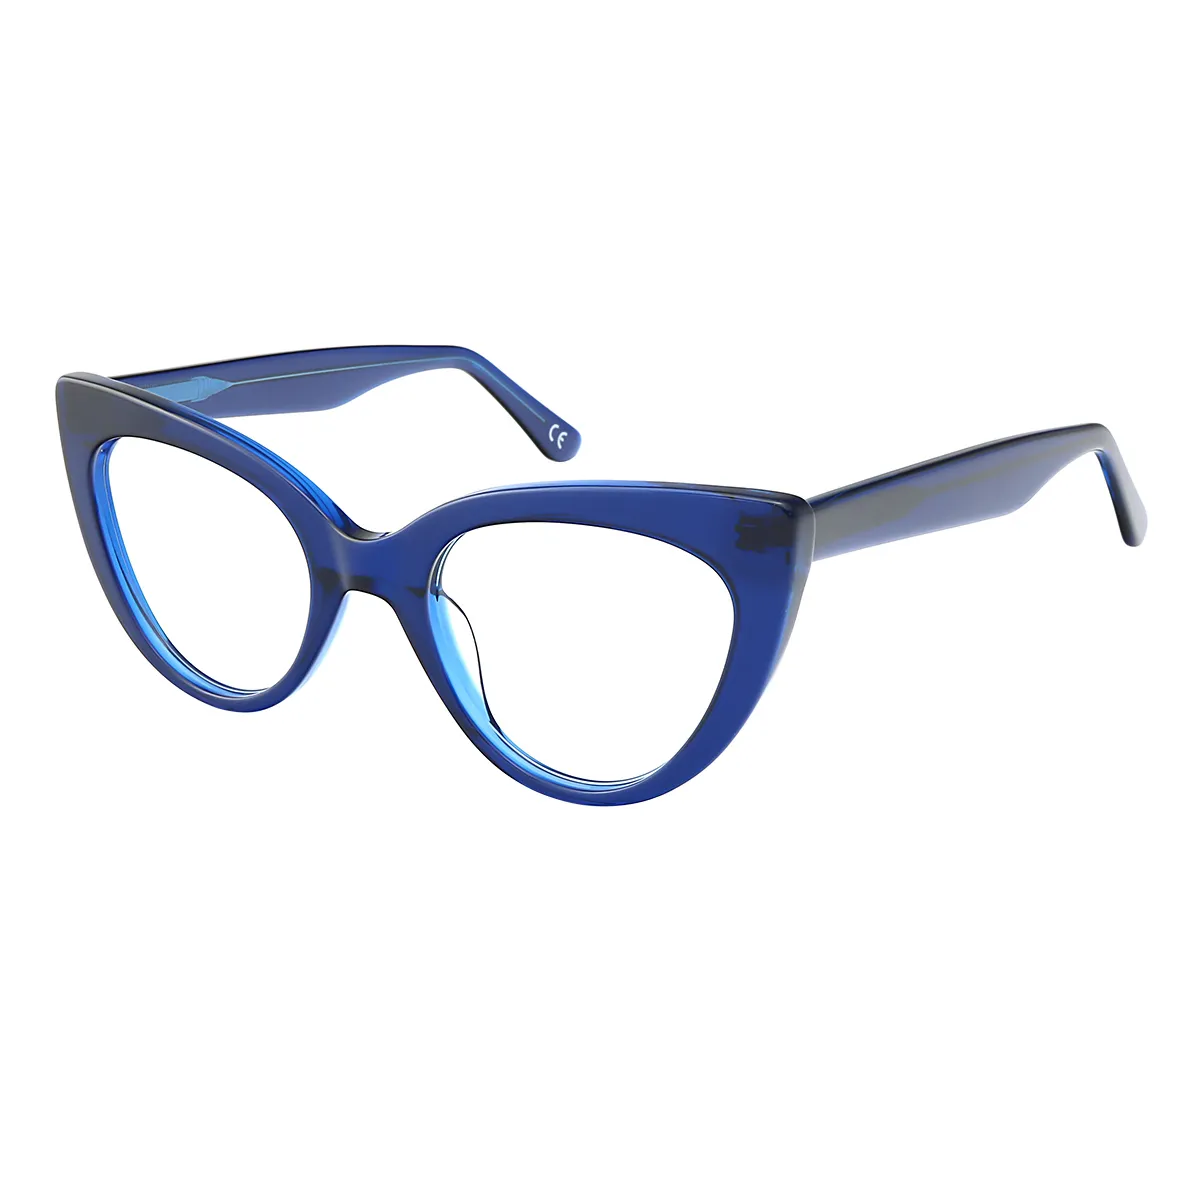 Hepburn - Cat-eye  Glasses for Women